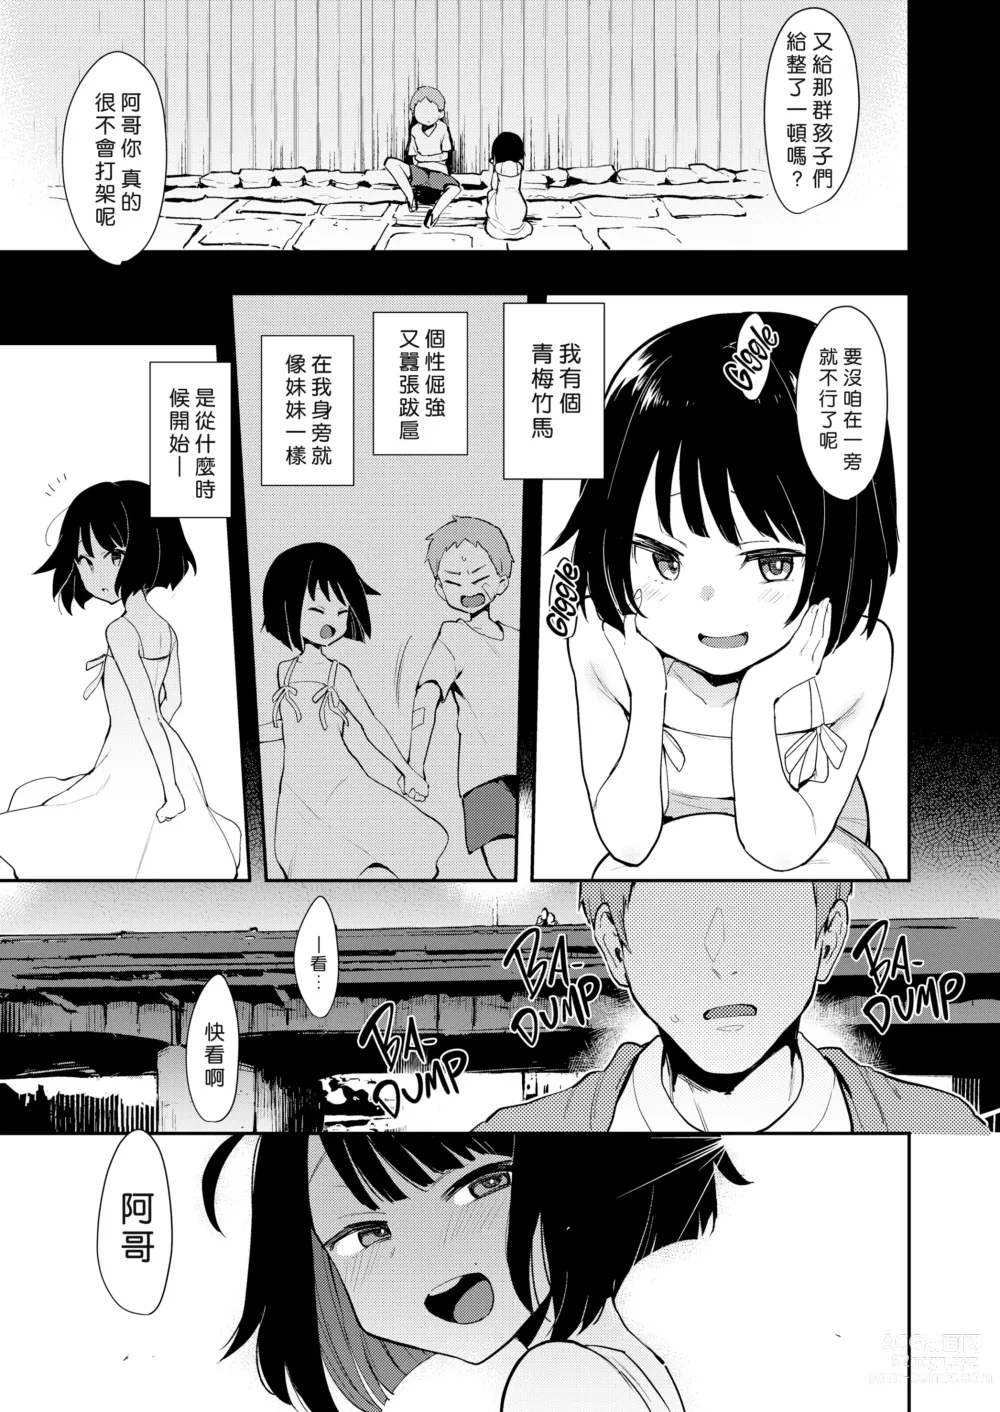 Page 3 of doujinshi 蝶子 I -性倫理の壊れた幼馴染が見知らぬ男に抱かれる生配信を視て射精する-